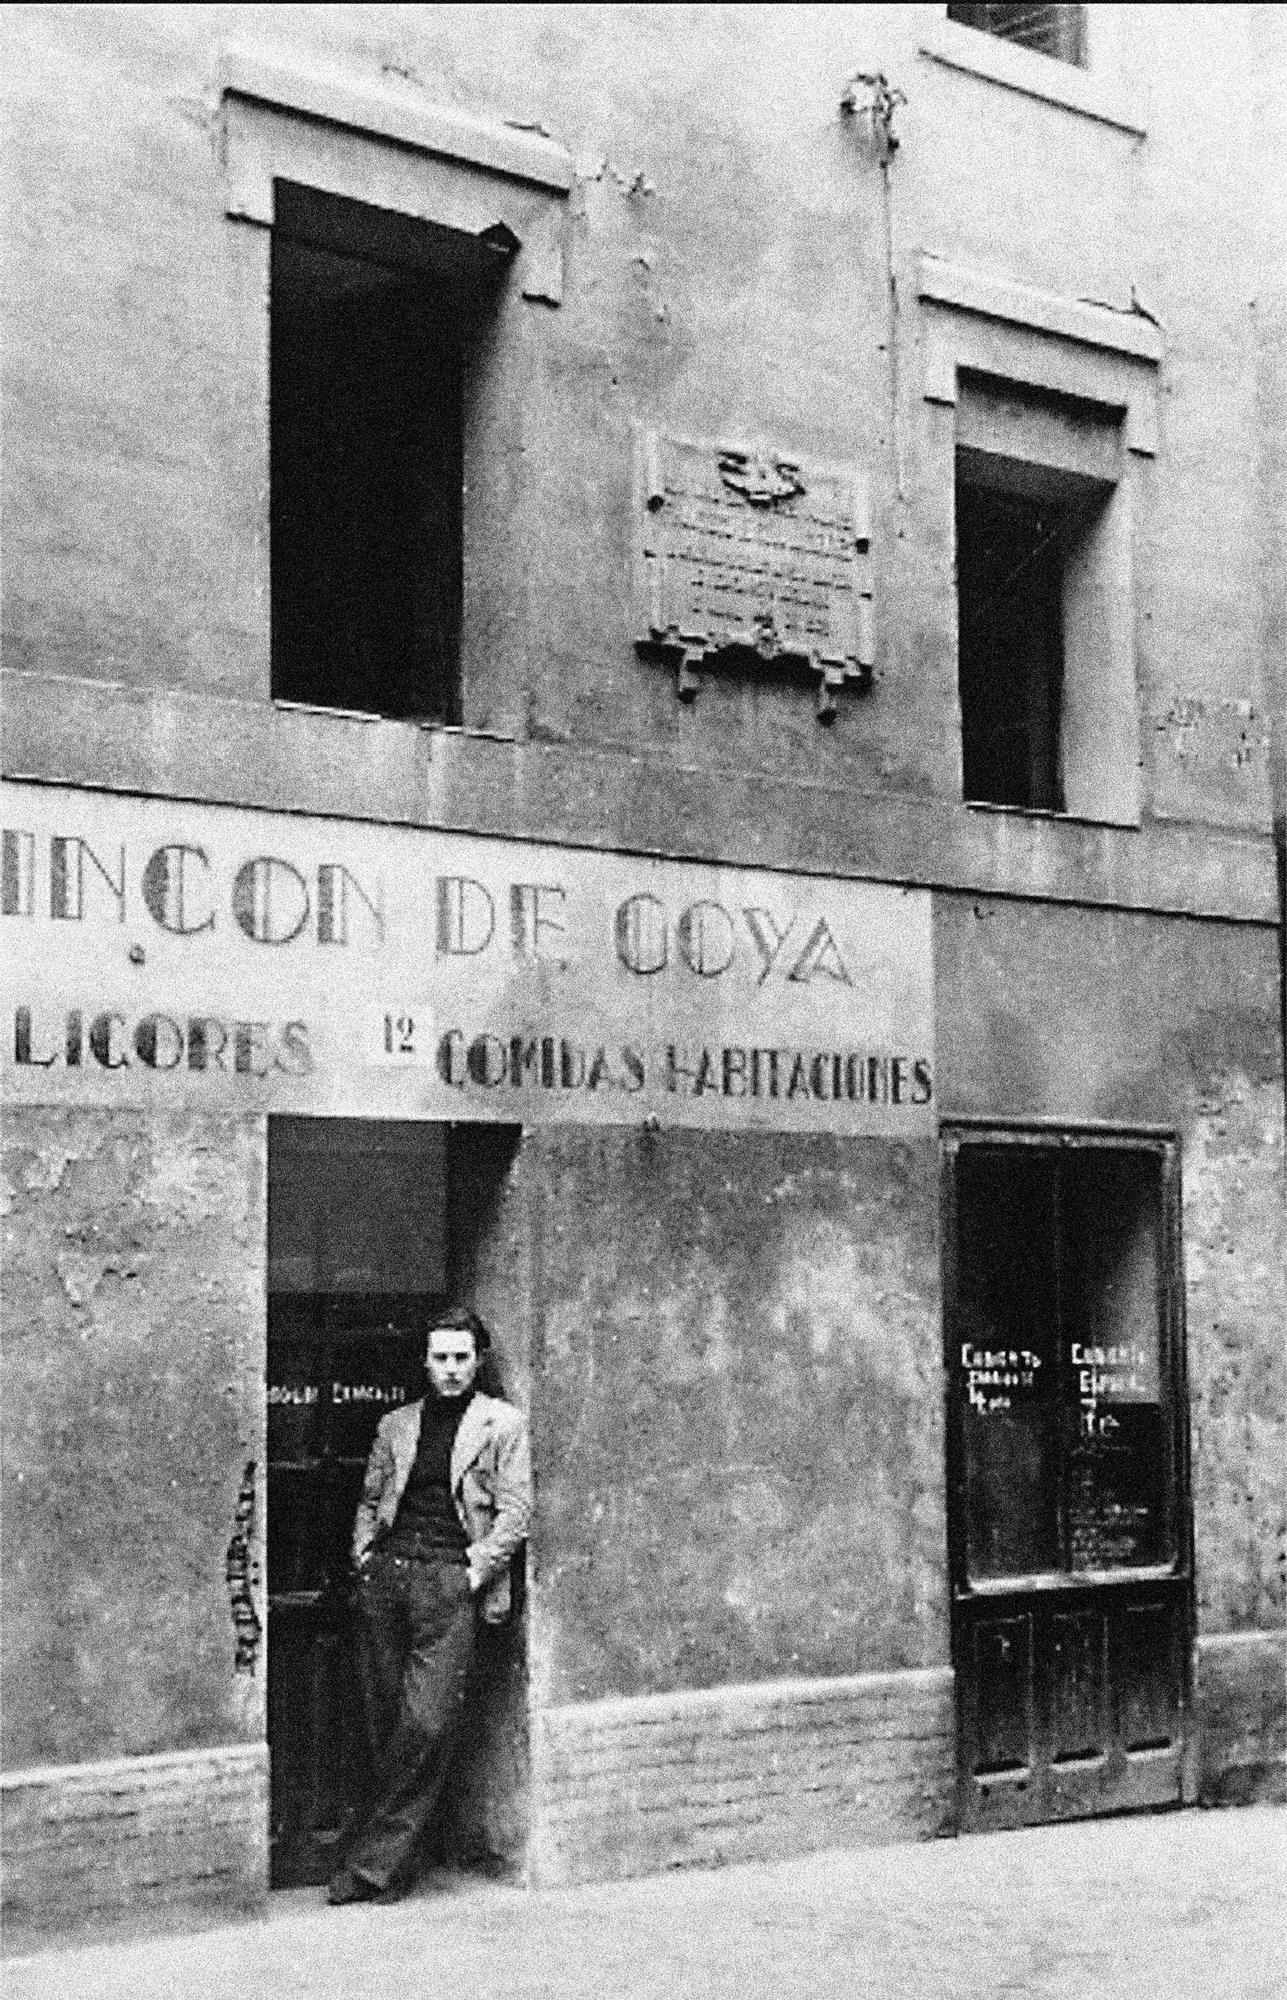 Así Zaragoza en los años 40, en imágenes